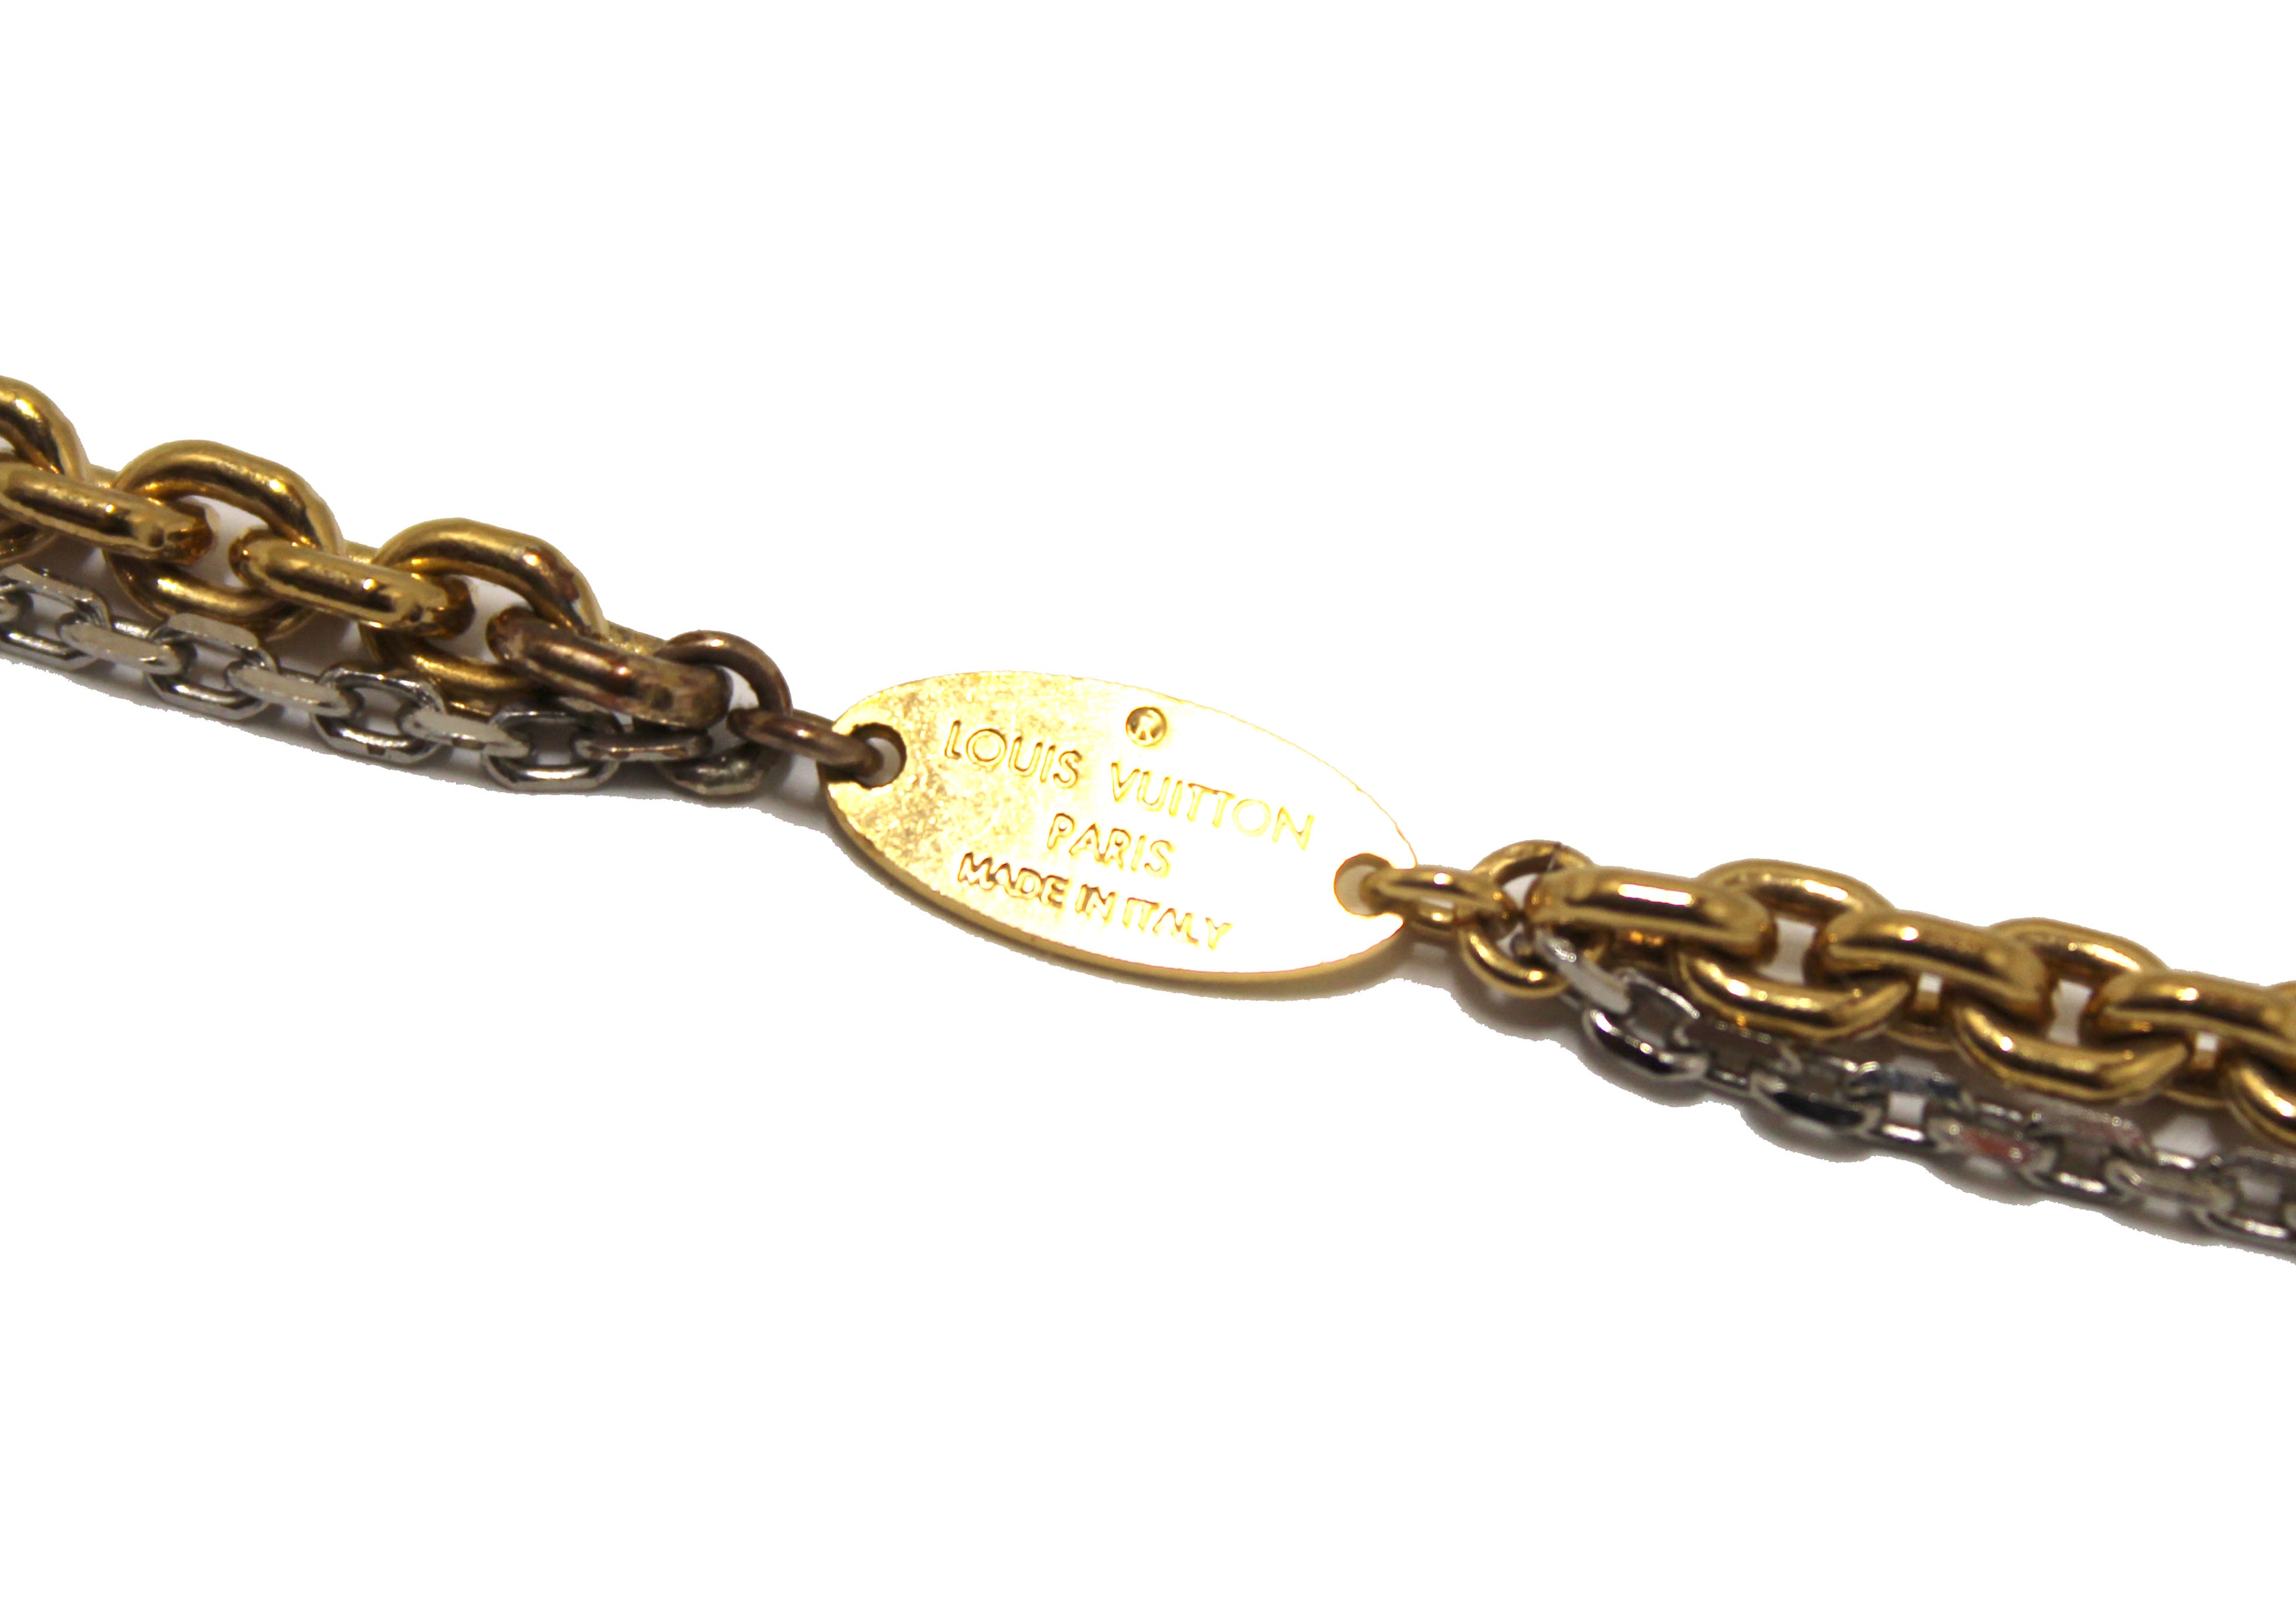 Authentic Louis Vuitton Monogram Tag Plate Necklace